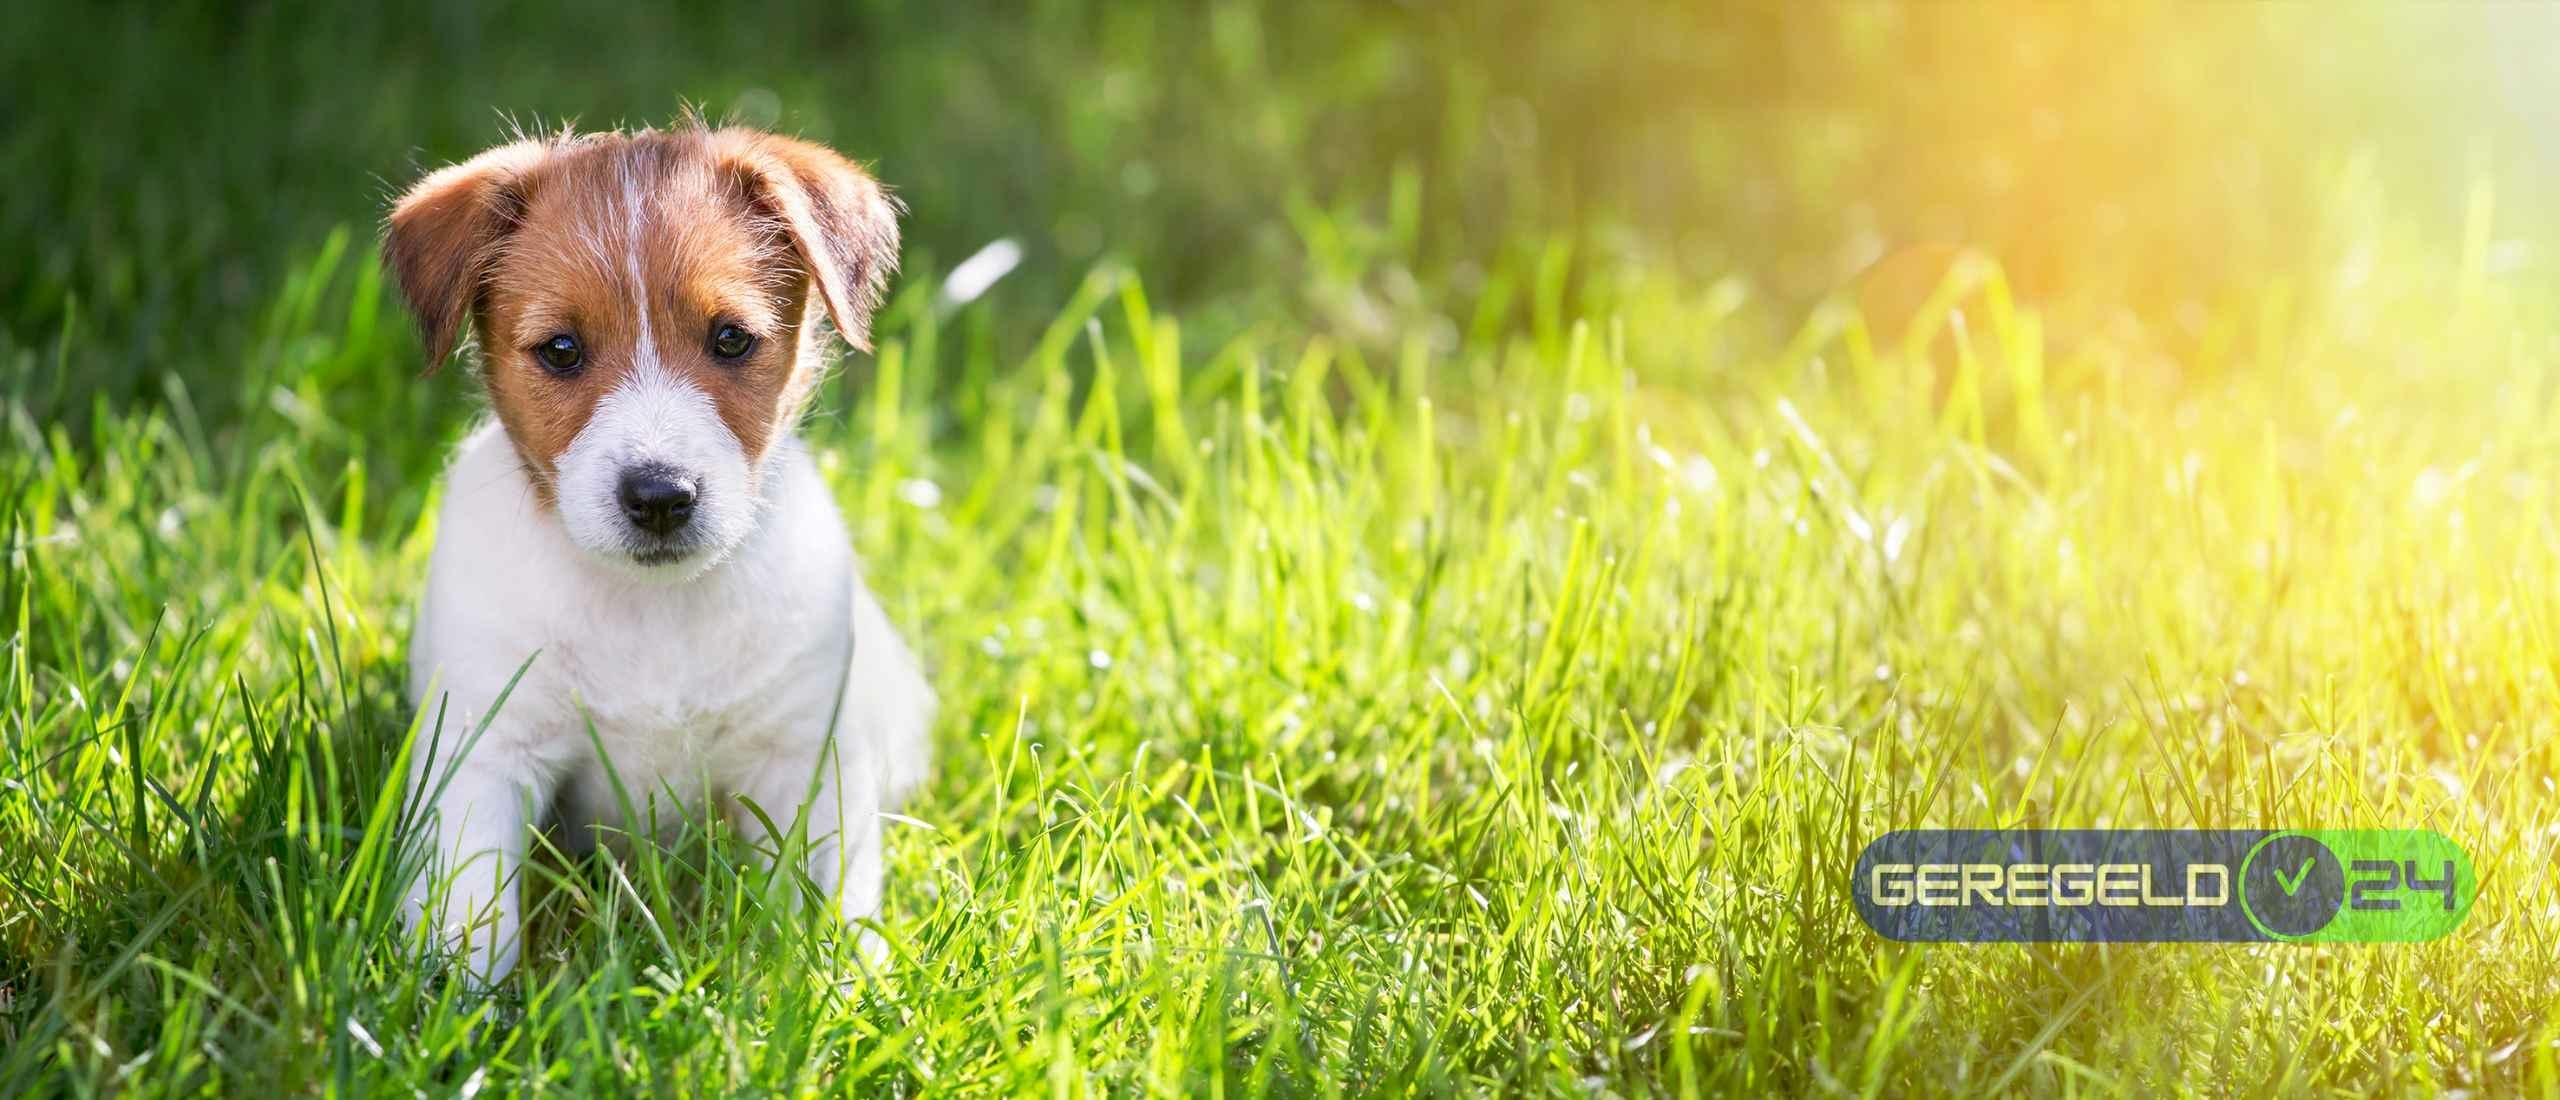 Kopen Van Een Puppy: Alles over Aanschaffen, Opvoeden en Zindelijk worden